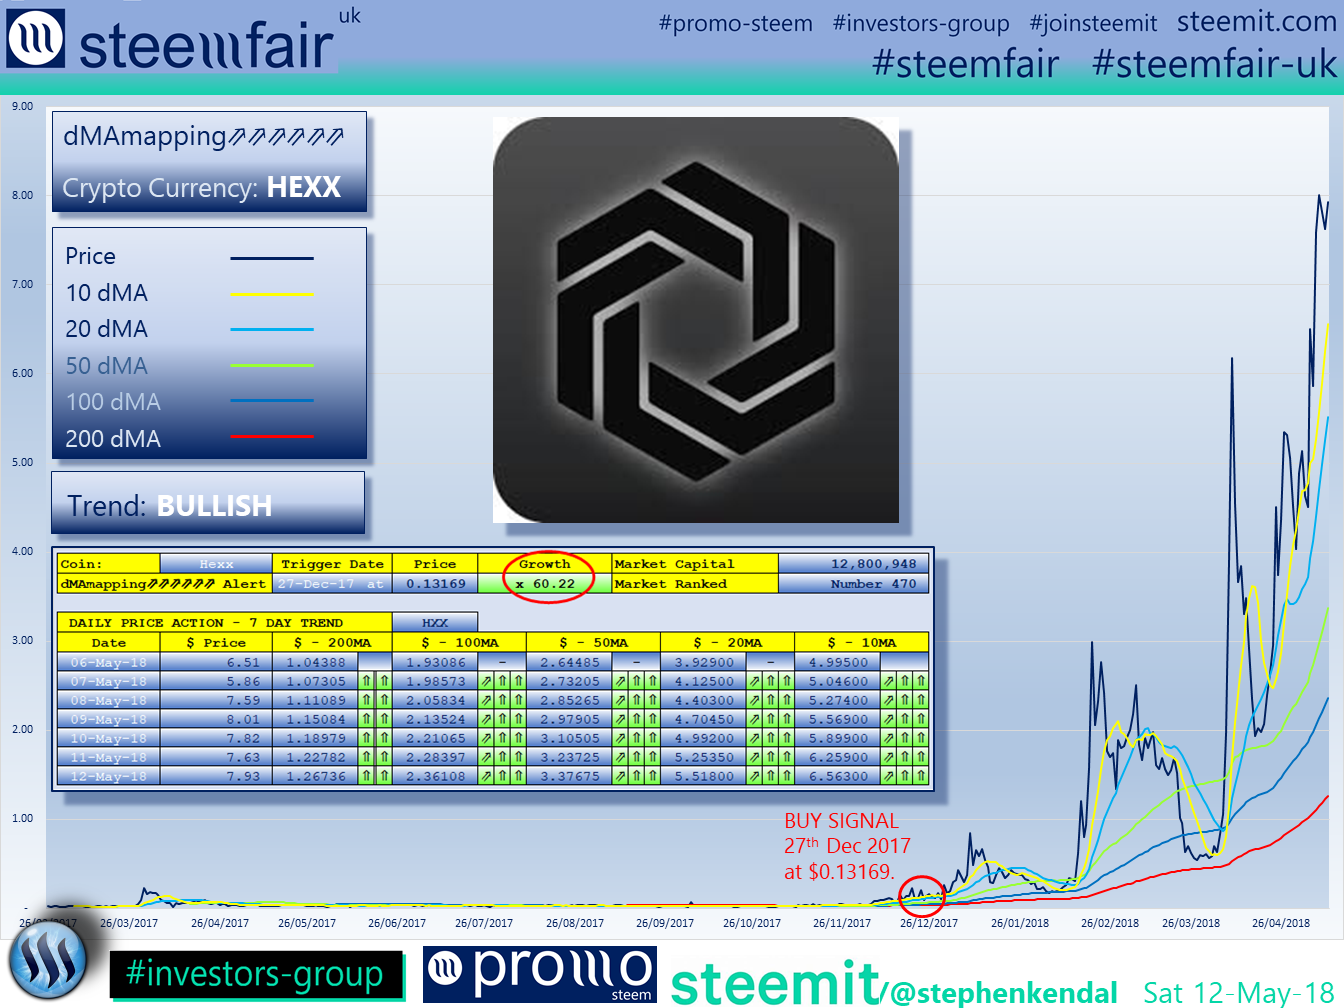 SteemFair SteemFair-uk Promo-Steem Investors-Group Hexx